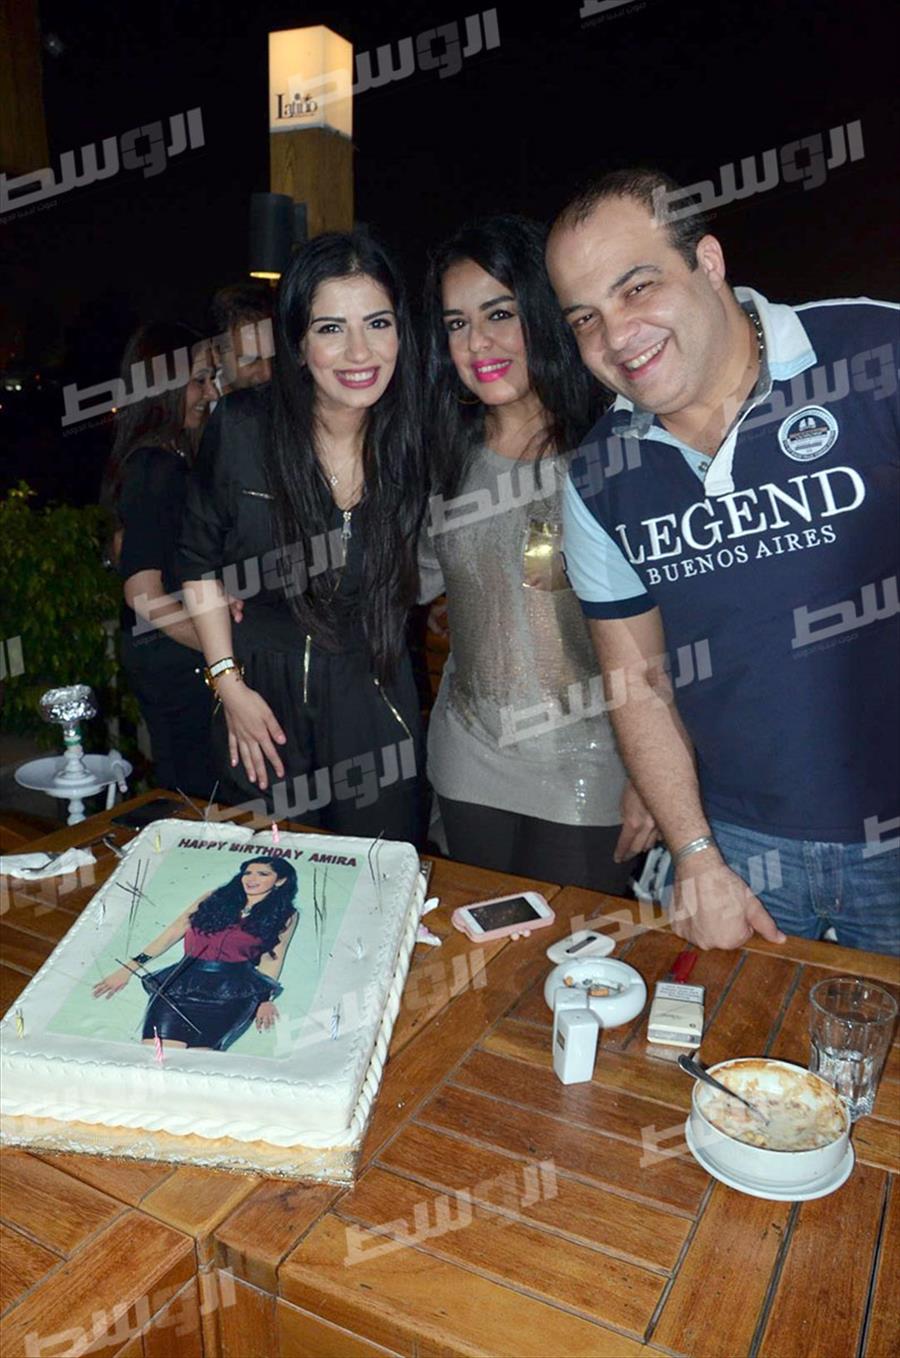 بالصور: نبيلة عبيد تحتفل بعيد ميلاد ابنة شقيقتها